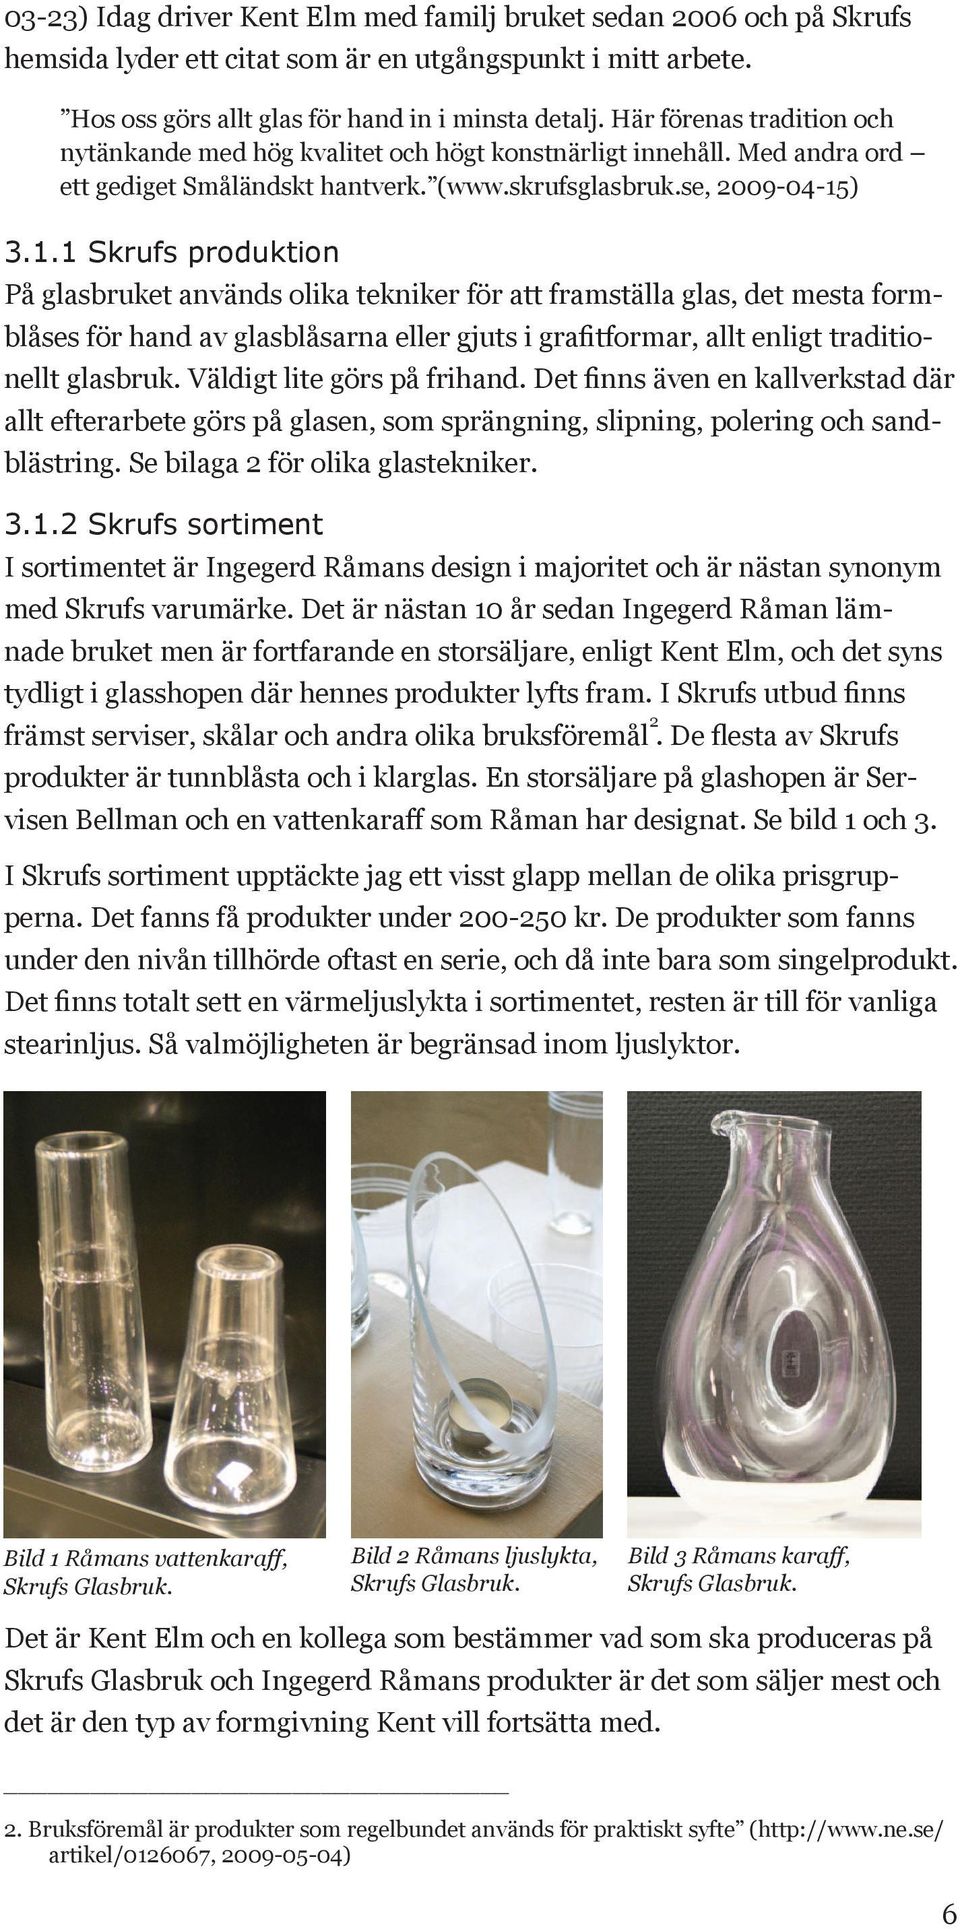 ) 3.1.1 Skrufs produktion På glasbruket används olika tekniker för att framställa glas, det mesta formblåses för hand av glasblåsarna eller gjuts i grafitformar, allt enligt traditionellt glasbruk.